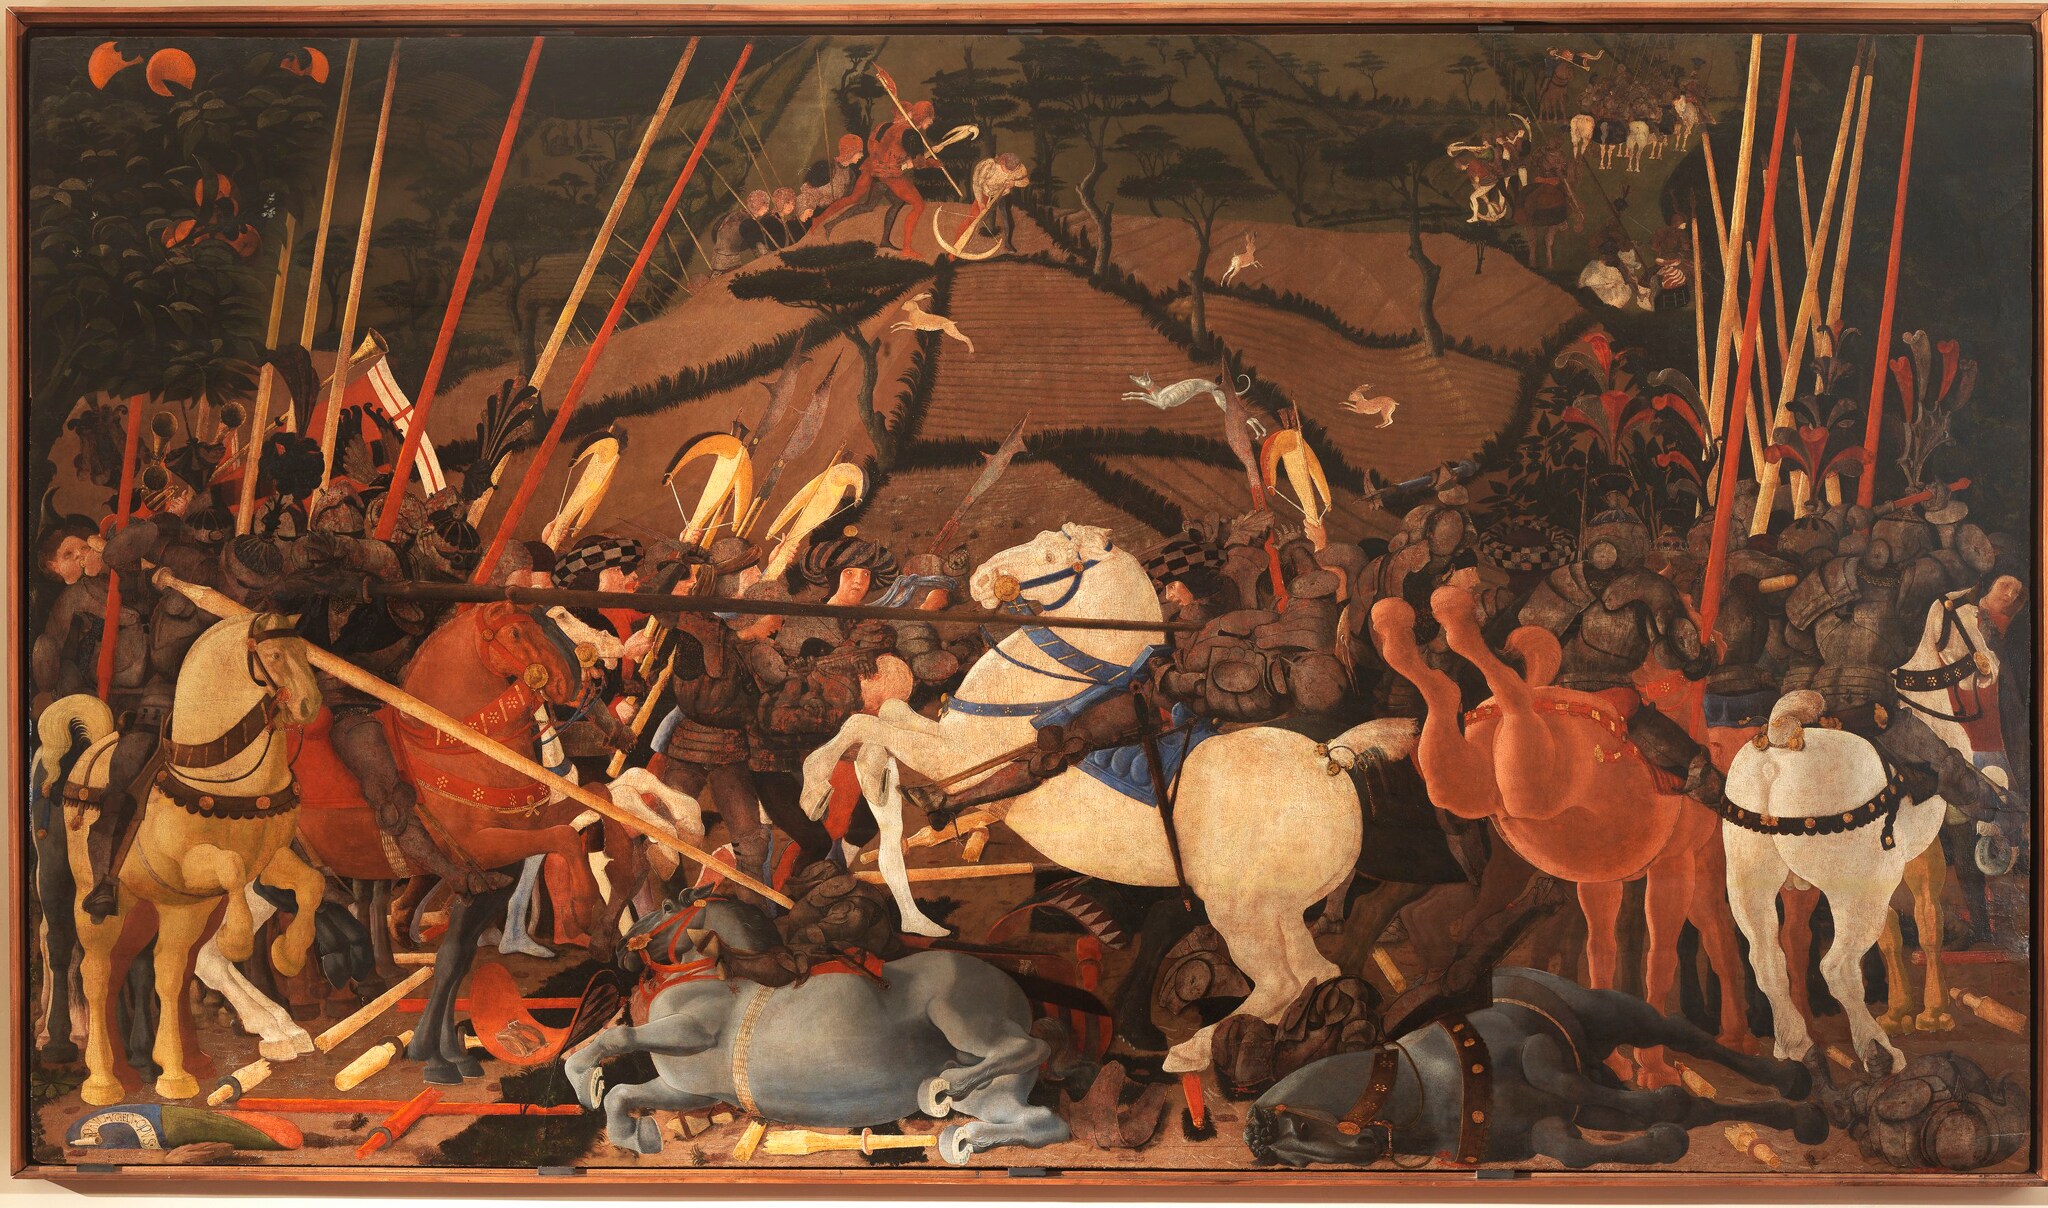 Paolo Uccello, Battaglia di San Romano, 1435-1440 ca., tempera su tavola, 182x323cm. La tavola era parte di un ciclo di tre dipinti che celebrava la vittoria dei fiorentini sulle truppe senesi e sull’alleanza guidata dal duca di Milano nella battaglia di San Romano (1432). Niccolò da Tolentino, a capo dell’esercito fiorentino, è raffigurato mentre con l’asta colpisce e disarciona Bernardino della Carda, il condottiero alla guida delle truppe avversarie.